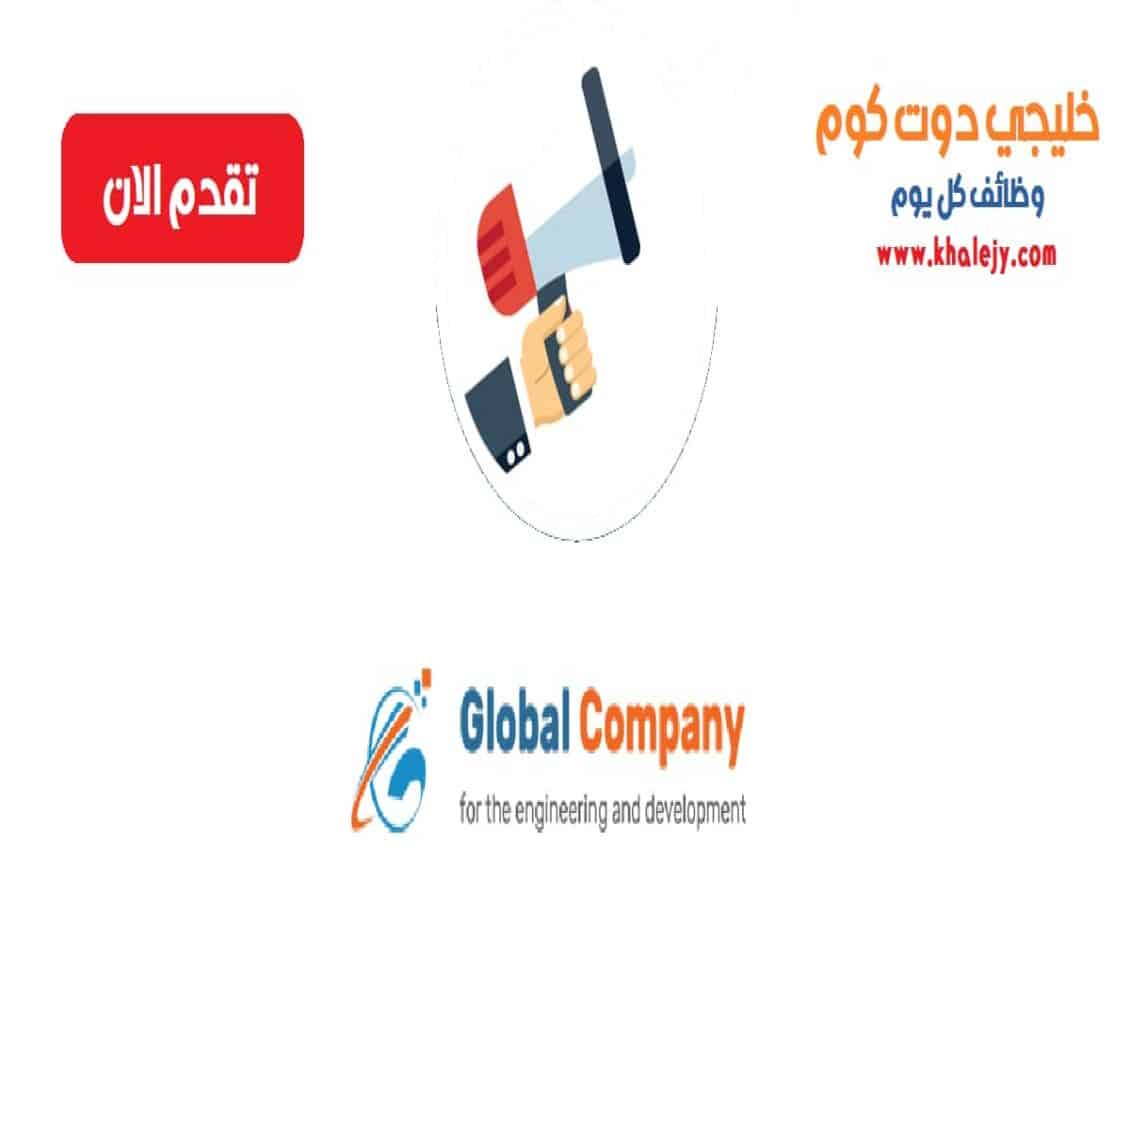 وظائف الشركة العالمية للهندسة و التطوير في سلطنة عمان